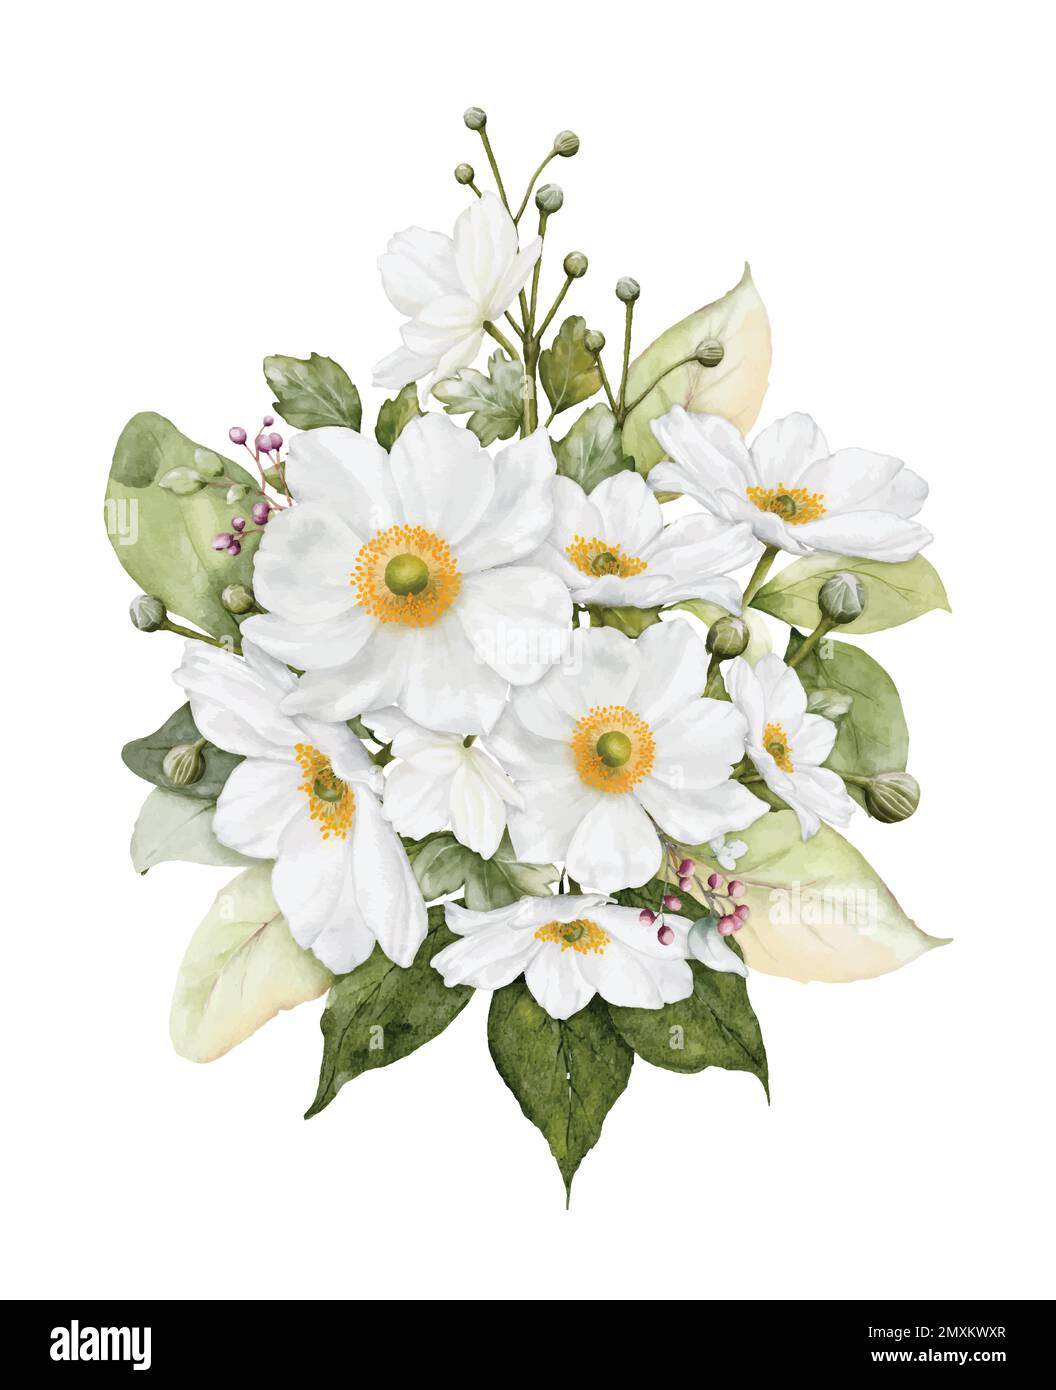 Aquarelle avec fleur blanche. Bouquet de fleurs et feuilles d'anémones convenant pour le mariage, la Saint-Valentin ou les cartes de vœux. Bo Illustration de Vecteur